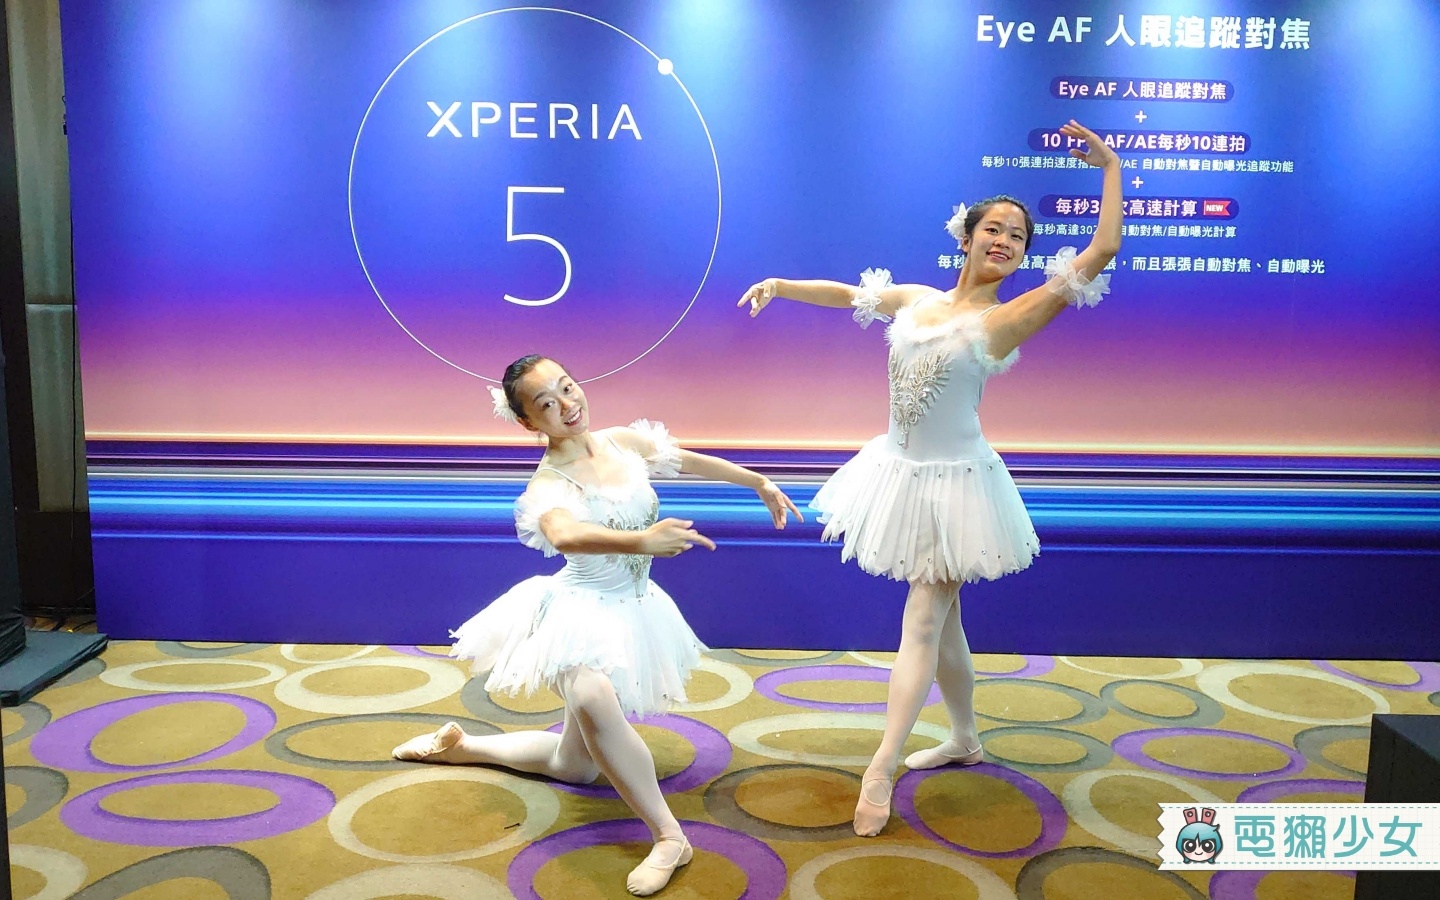 Sony最新旗艦Xperia 5 機身變小6.1吋更好掌握 售價25,900 元，9/24 開始預購